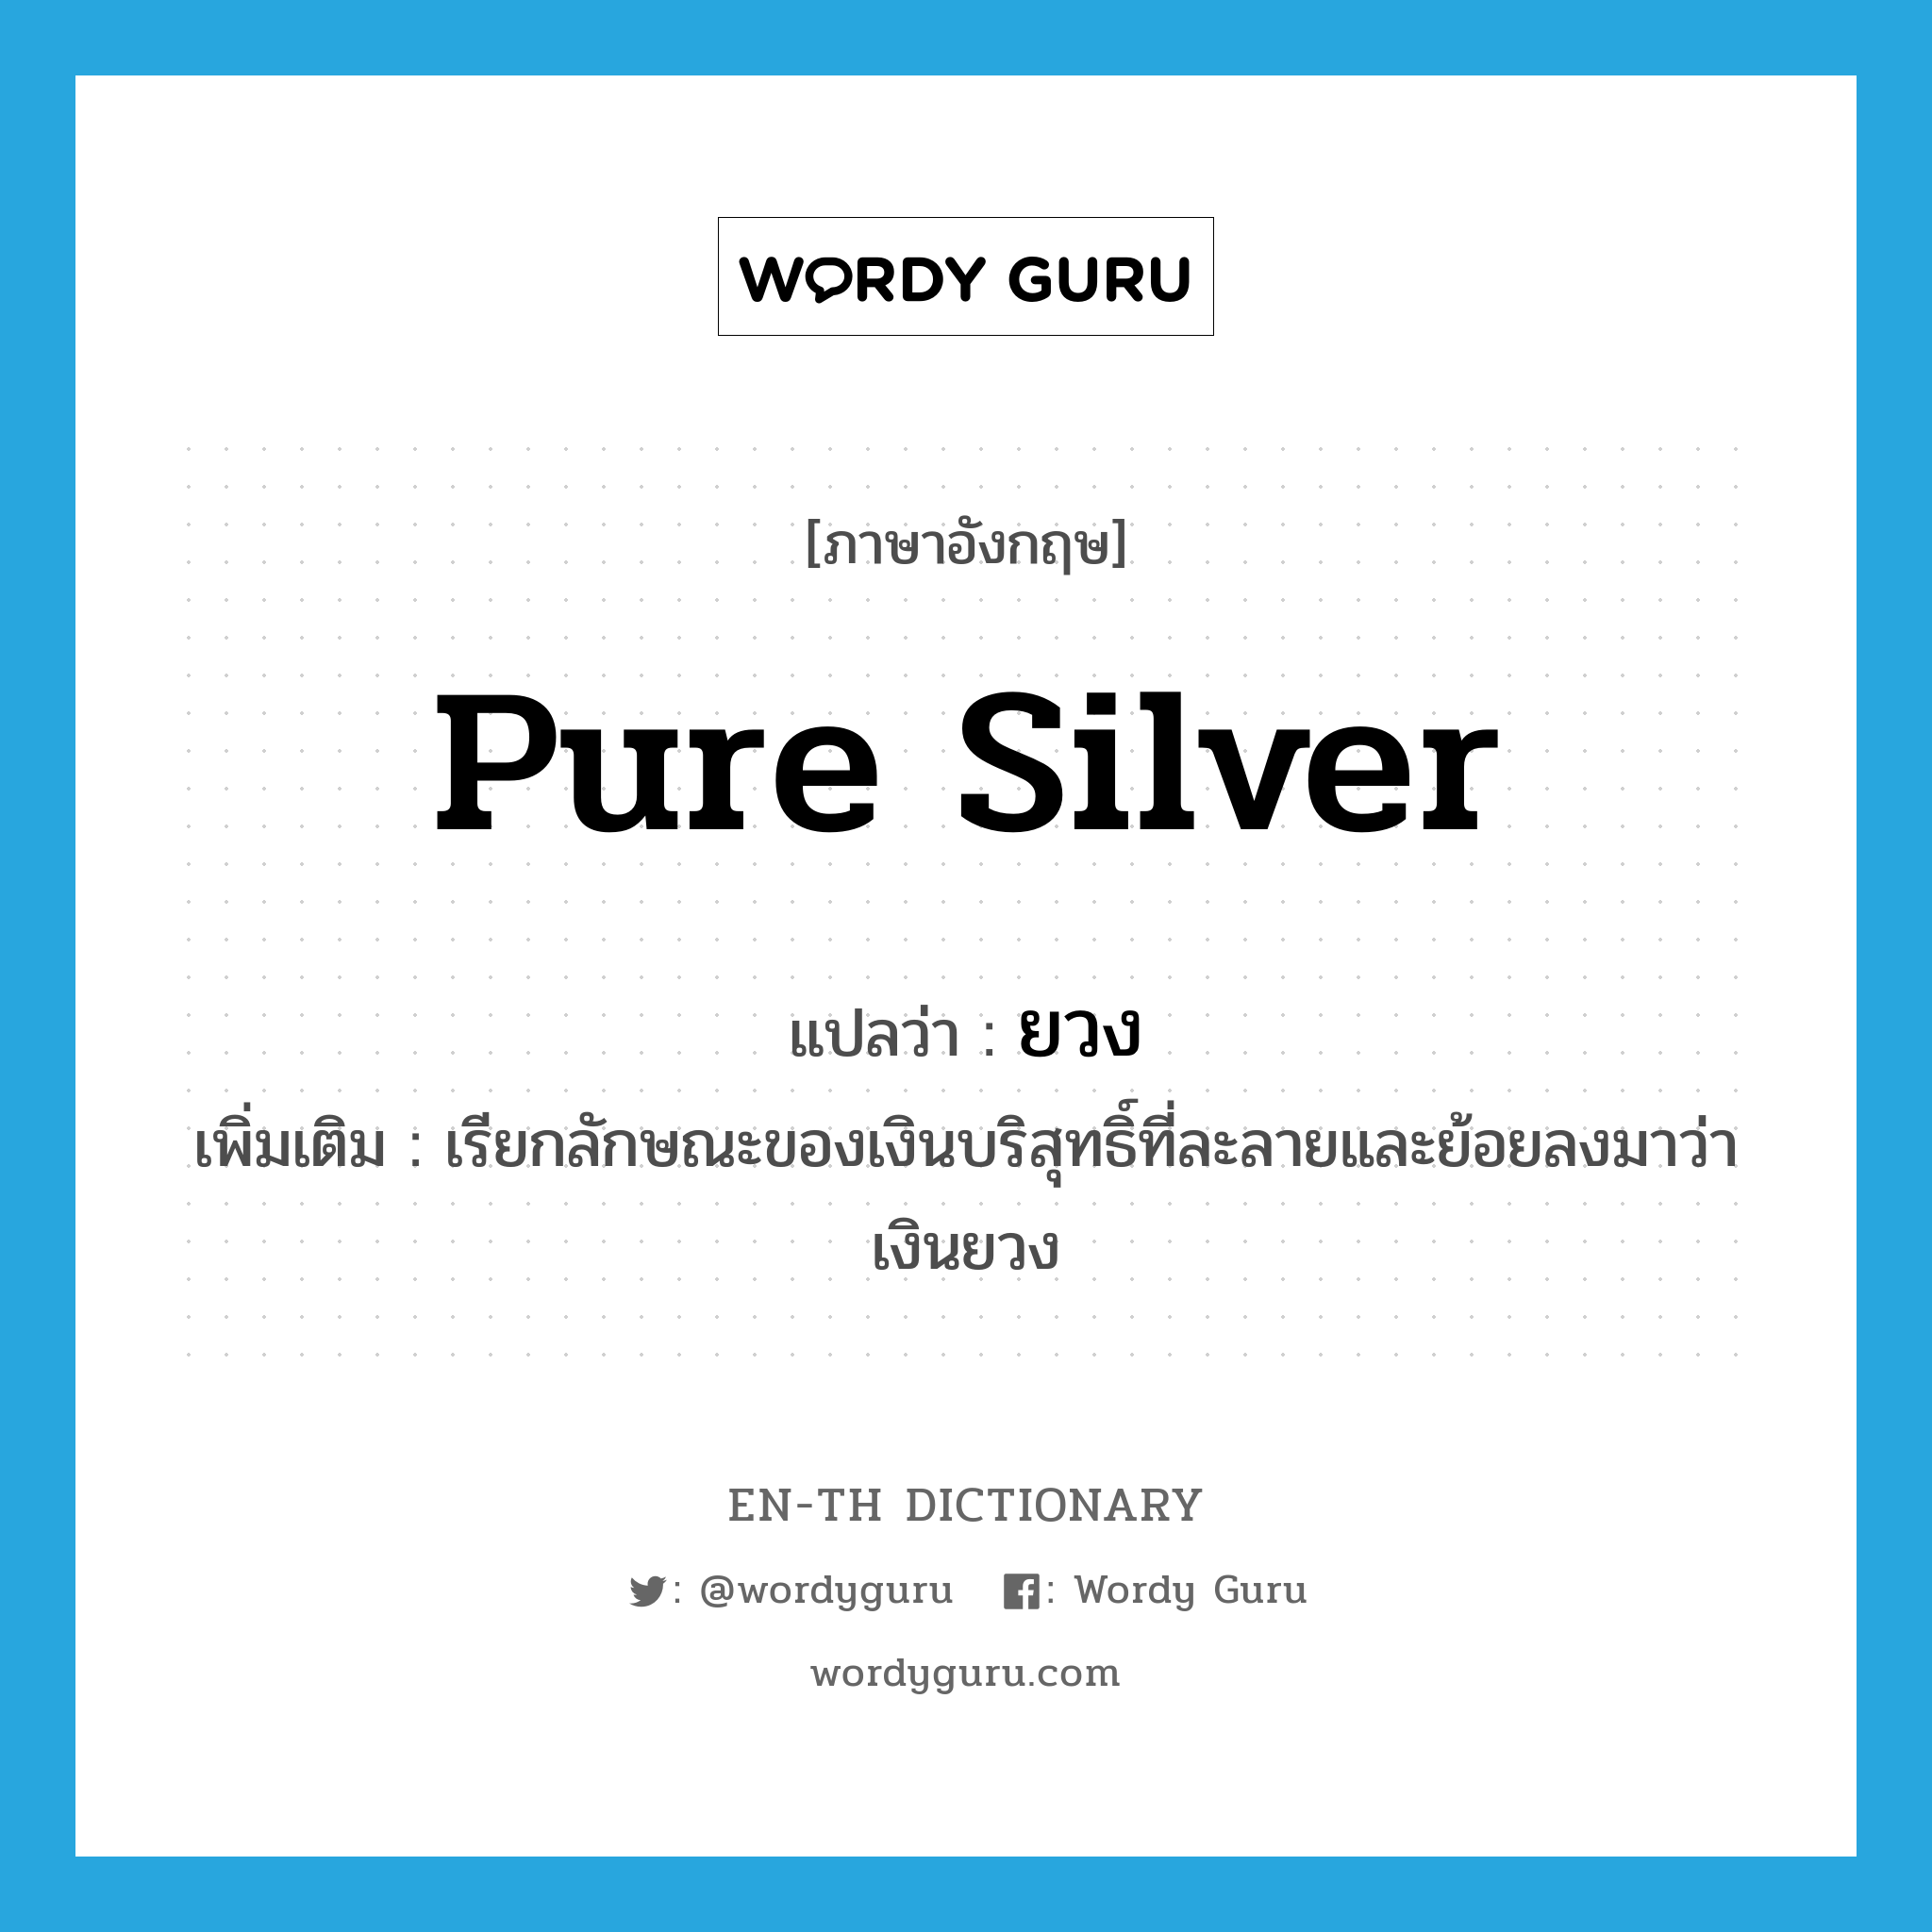 pure silver แปลว่า?, คำศัพท์ภาษาอังกฤษ pure silver แปลว่า ยวง ประเภท N เพิ่มเติม เรียกลักษณะของเงินบริสุทธิ์ที่ละลายและย้อยลงมาว่า เงินยวง หมวด N